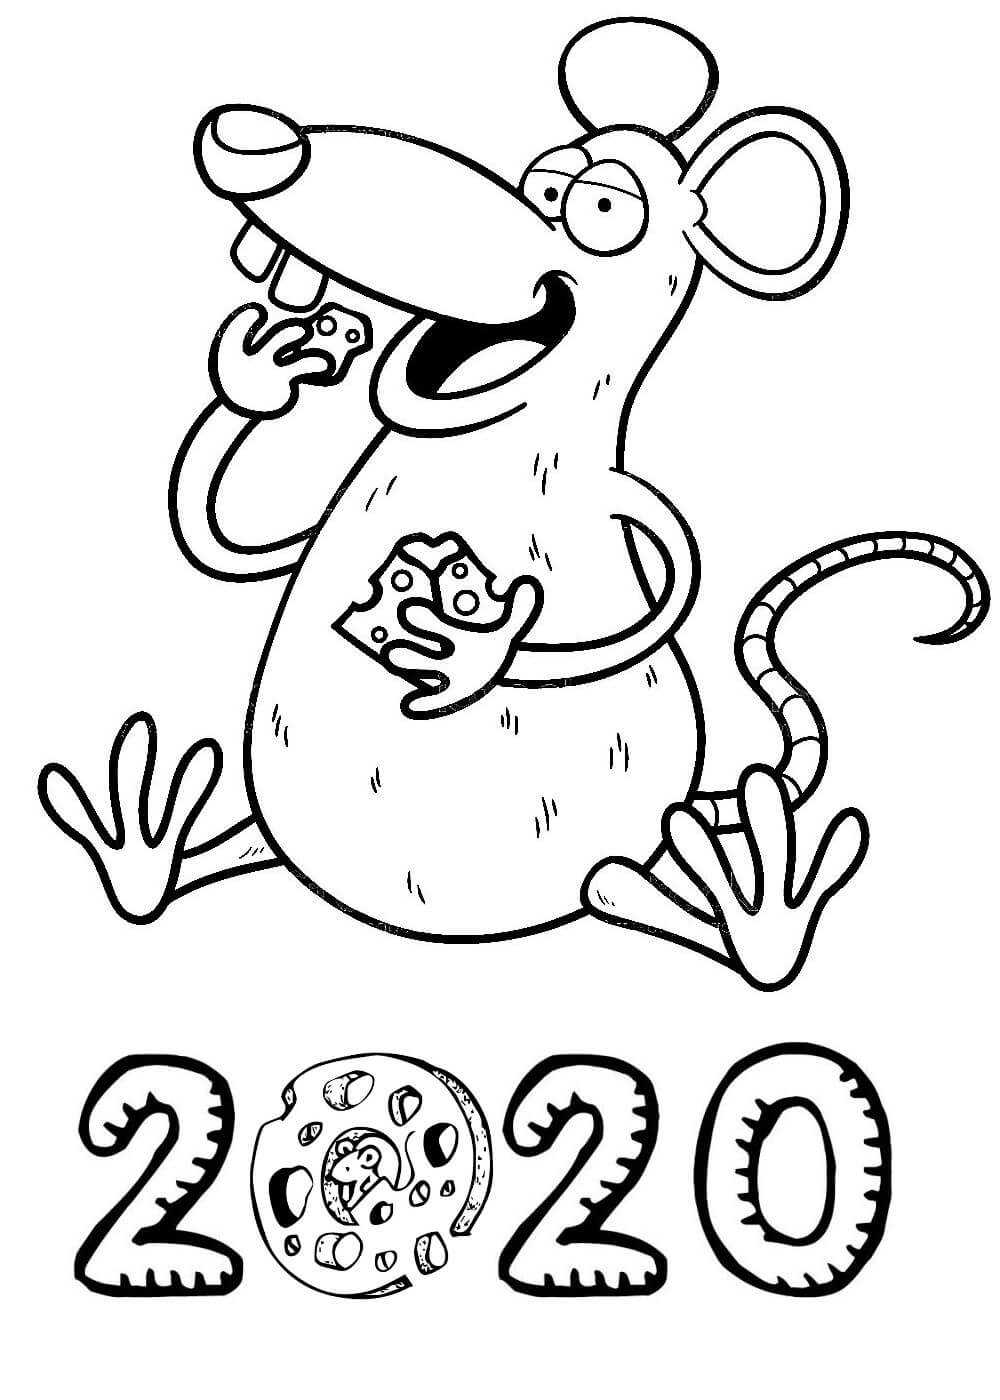 Трафареты крысы или мыши для вырезания на окна к новому году 2020